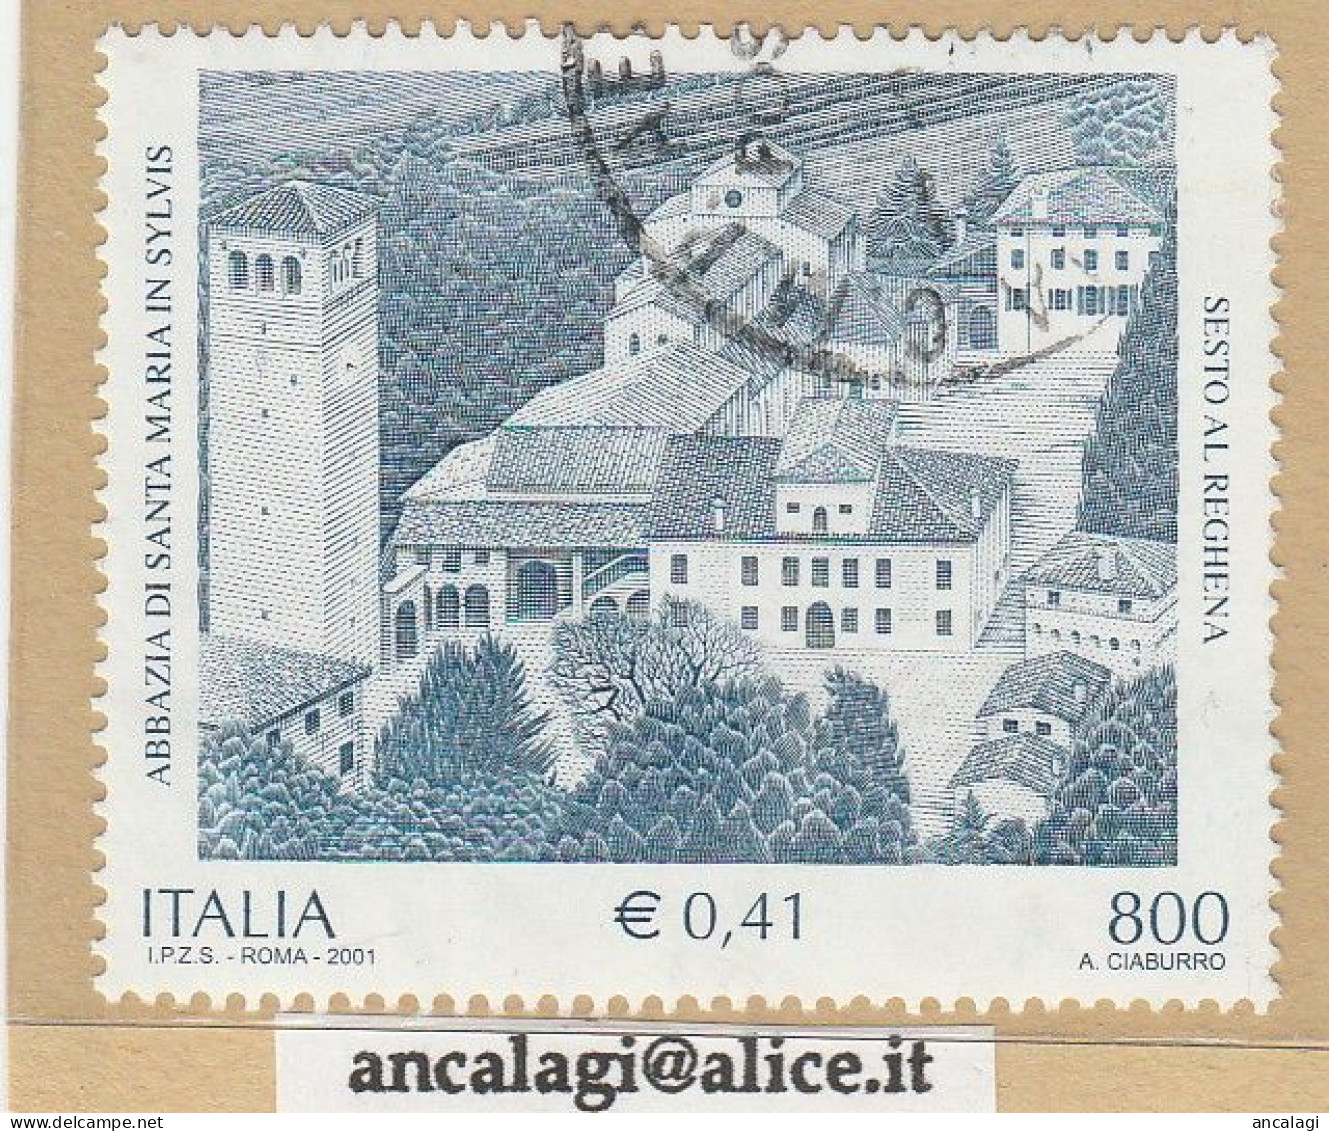 USATI ITALIA 2001 - Ref.0845 "ABBAZIA SANTA MARIA IN SYLVIS" 1 Val. - - 2001-10: Usati